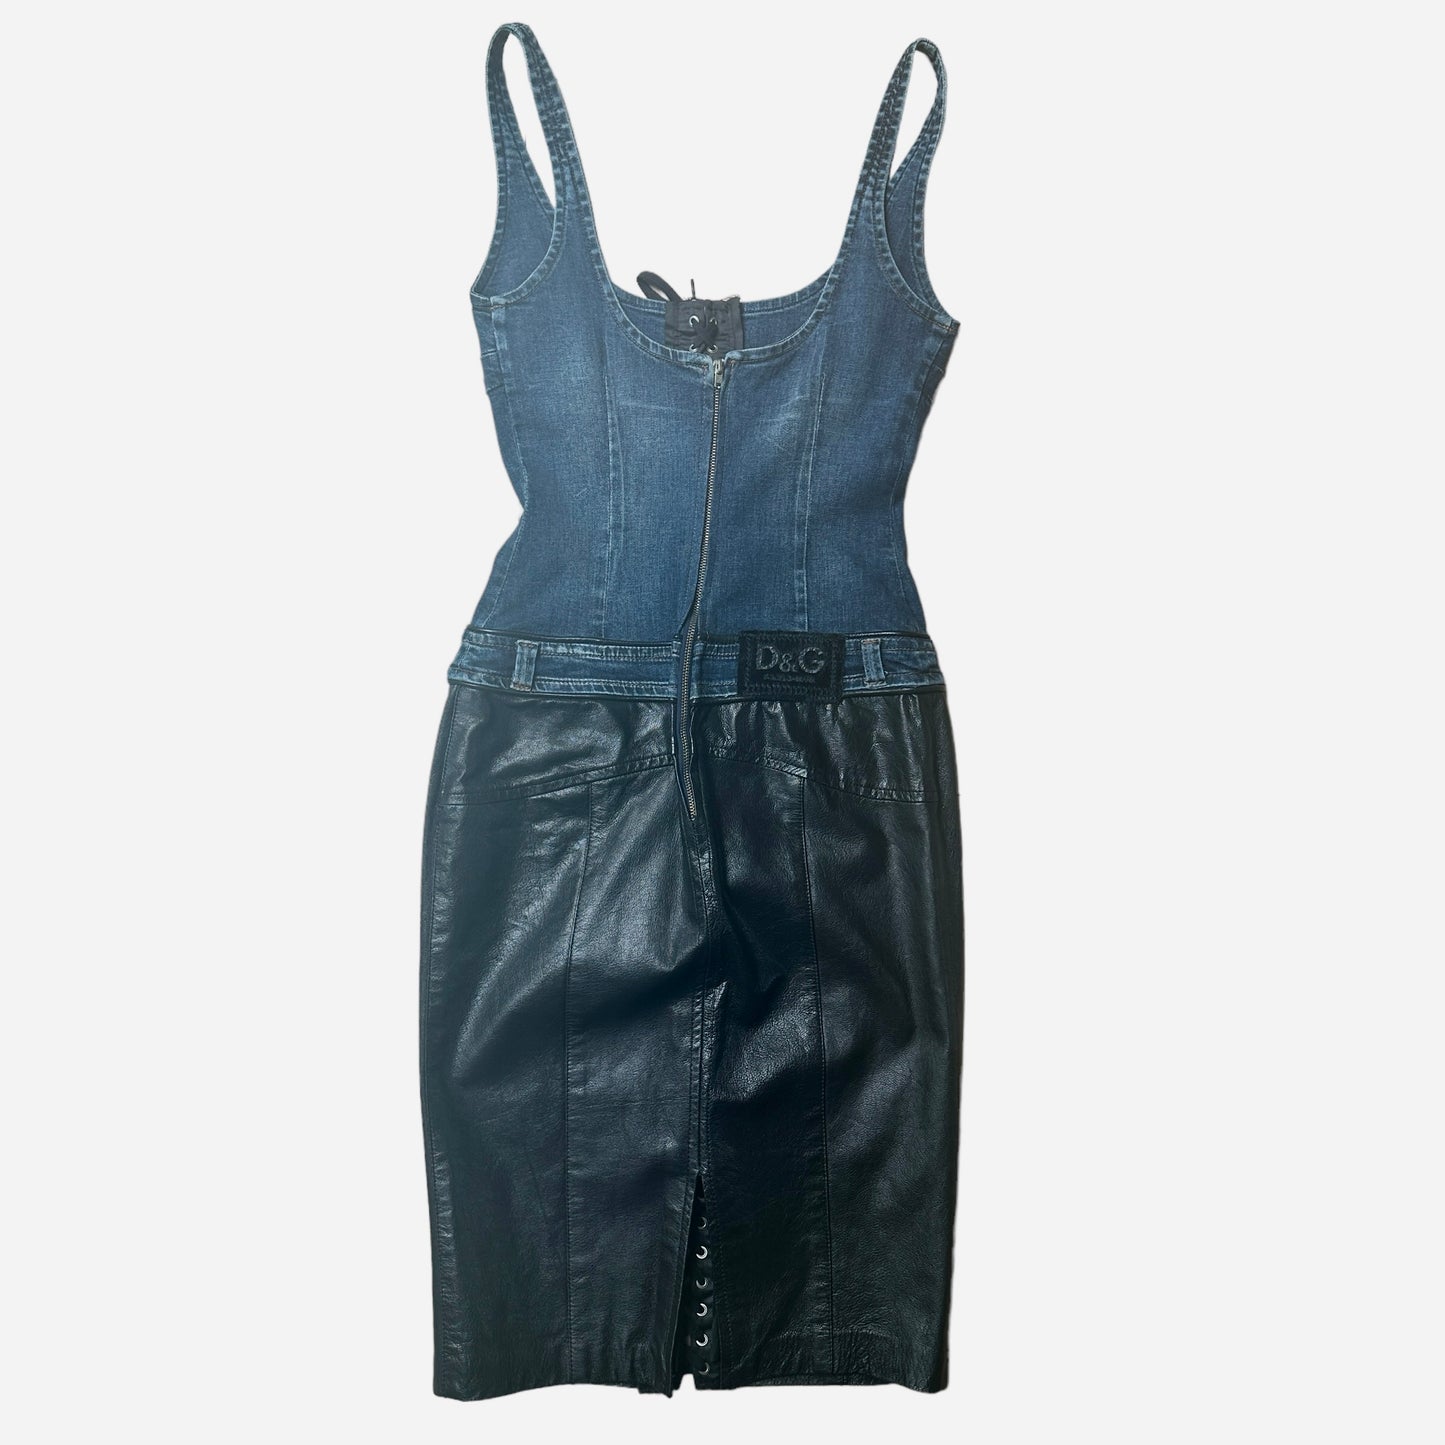 Vintage Denim & Black Leather Dress - M